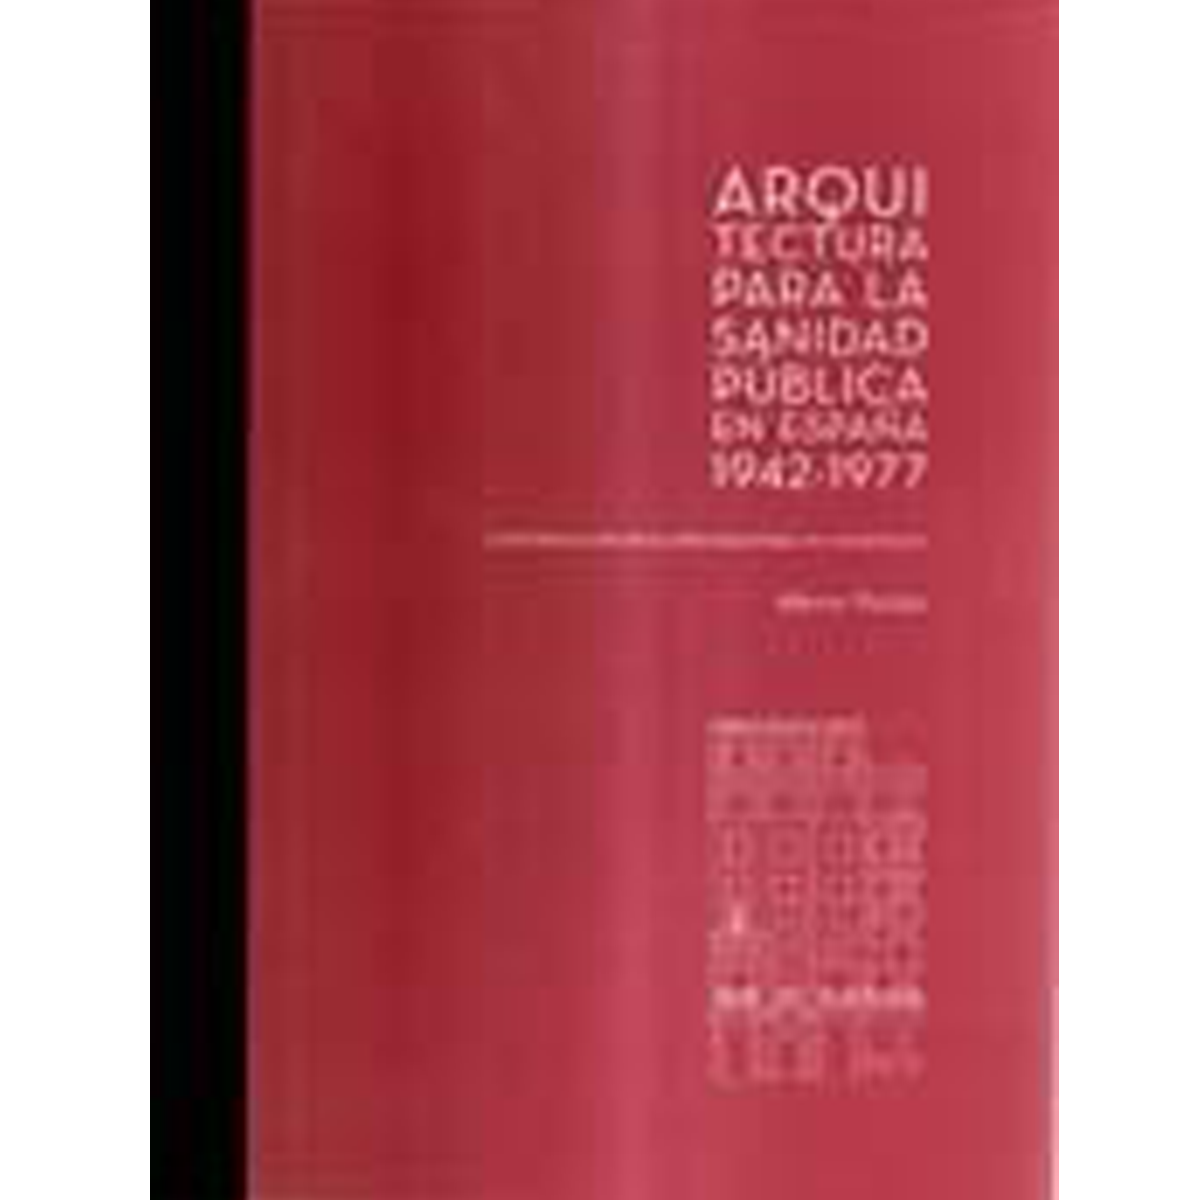 Arquitectura para la Sanidad Pública en España, 1942-1977